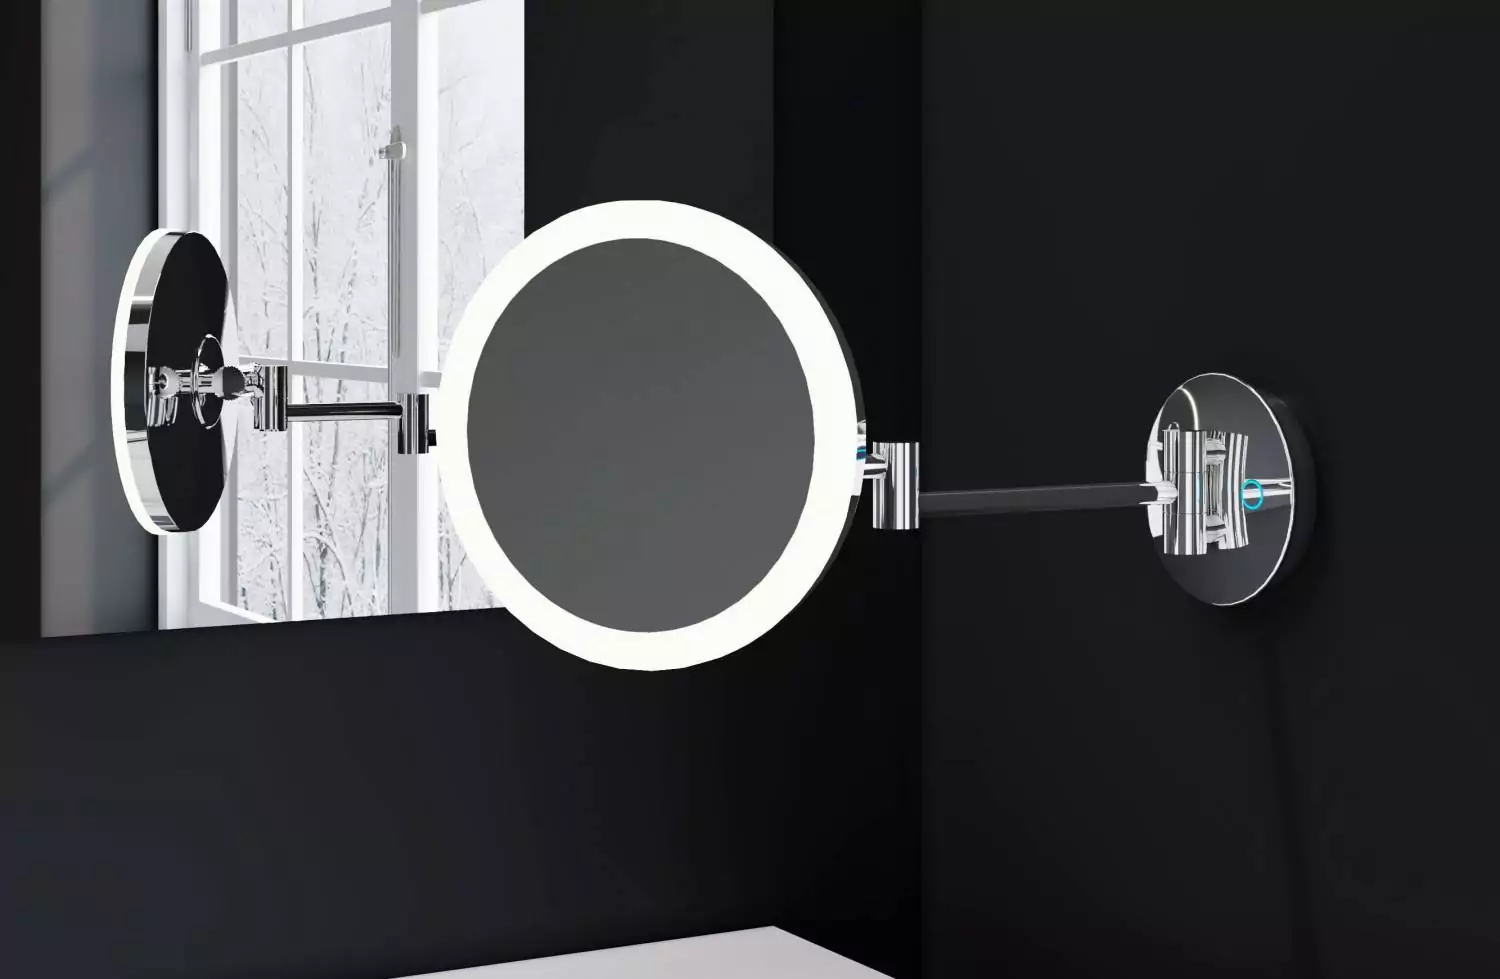 Espejo cosmético de aumento de pared con LED integrado Nysa El